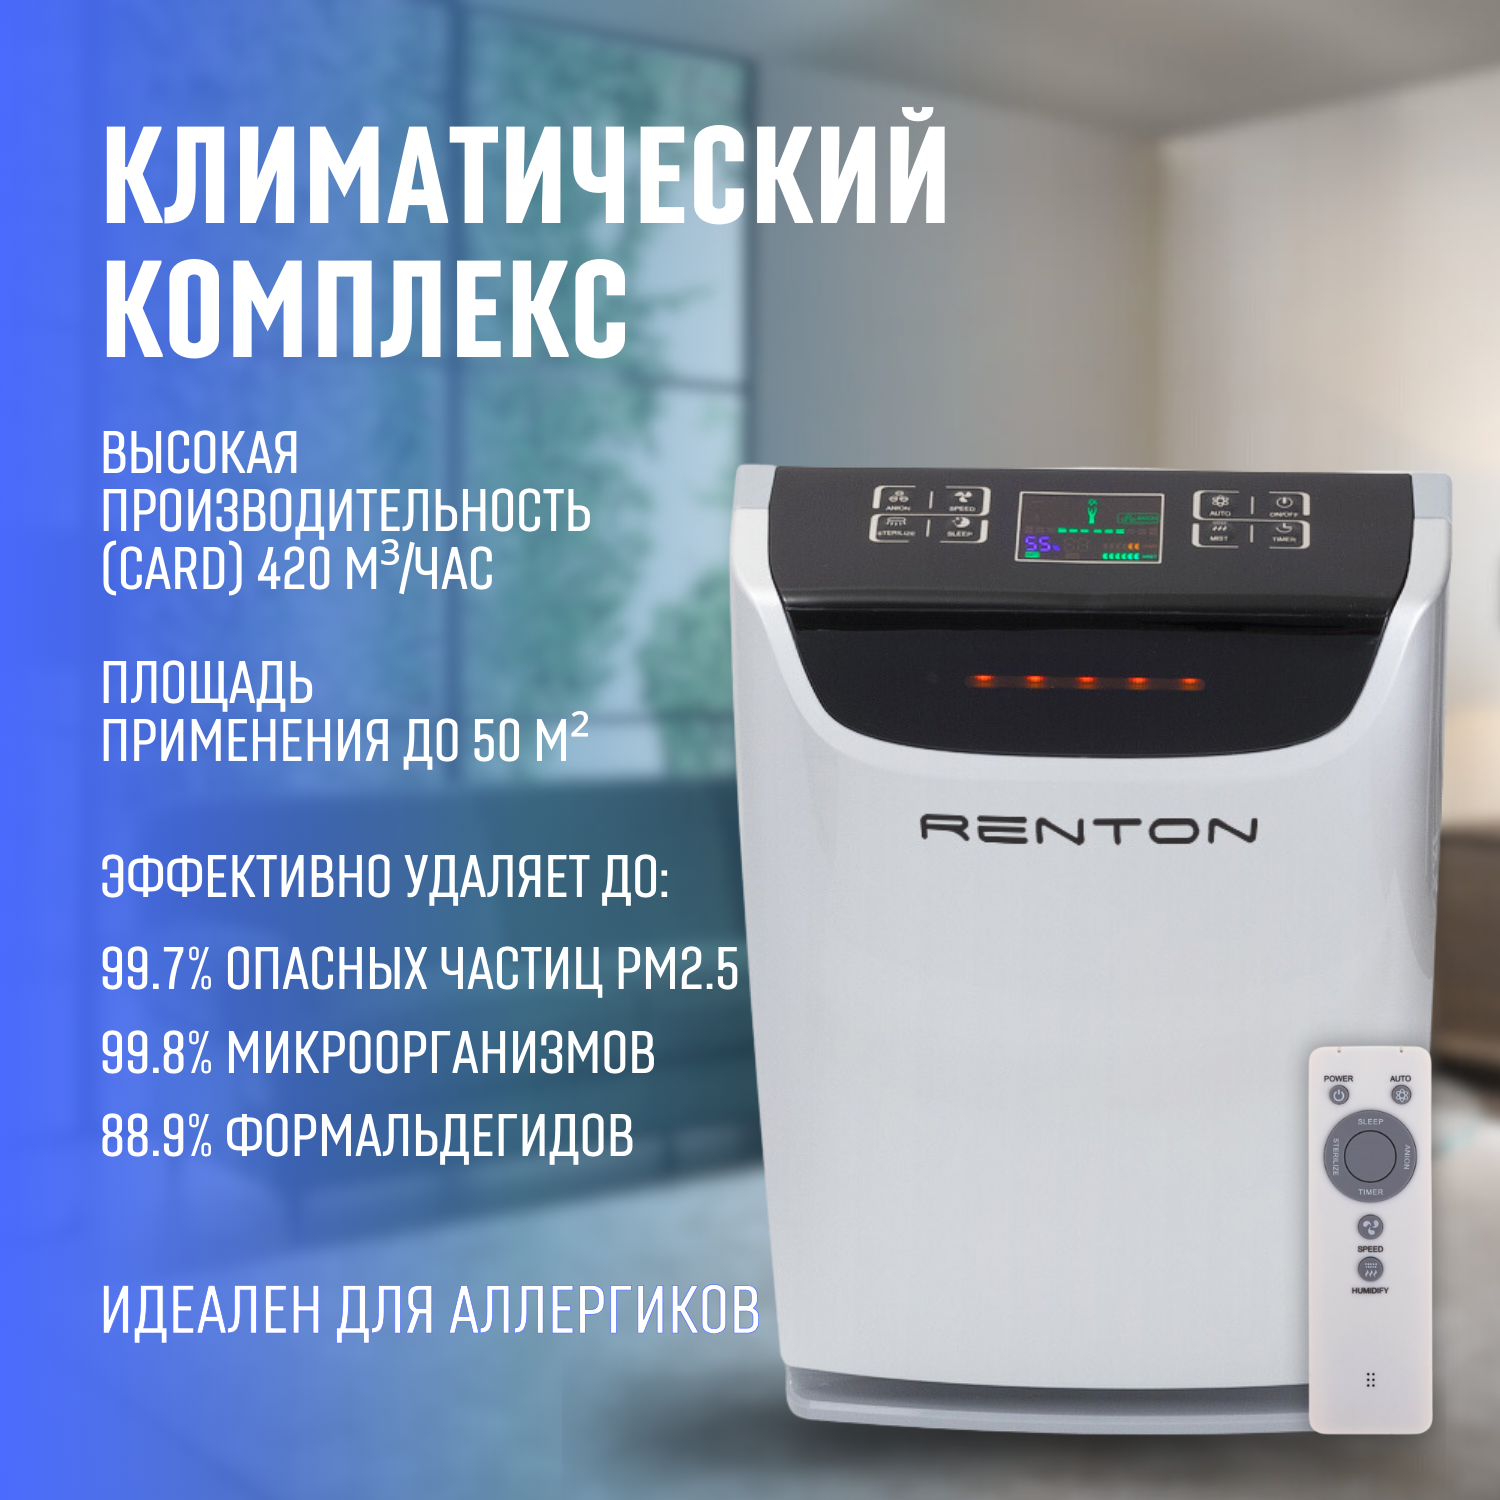 Климатический комплекс Renton GP-800 Pro серебристый, белый, купить в Москве, цены в интернет-магазинах на Мегамаркет